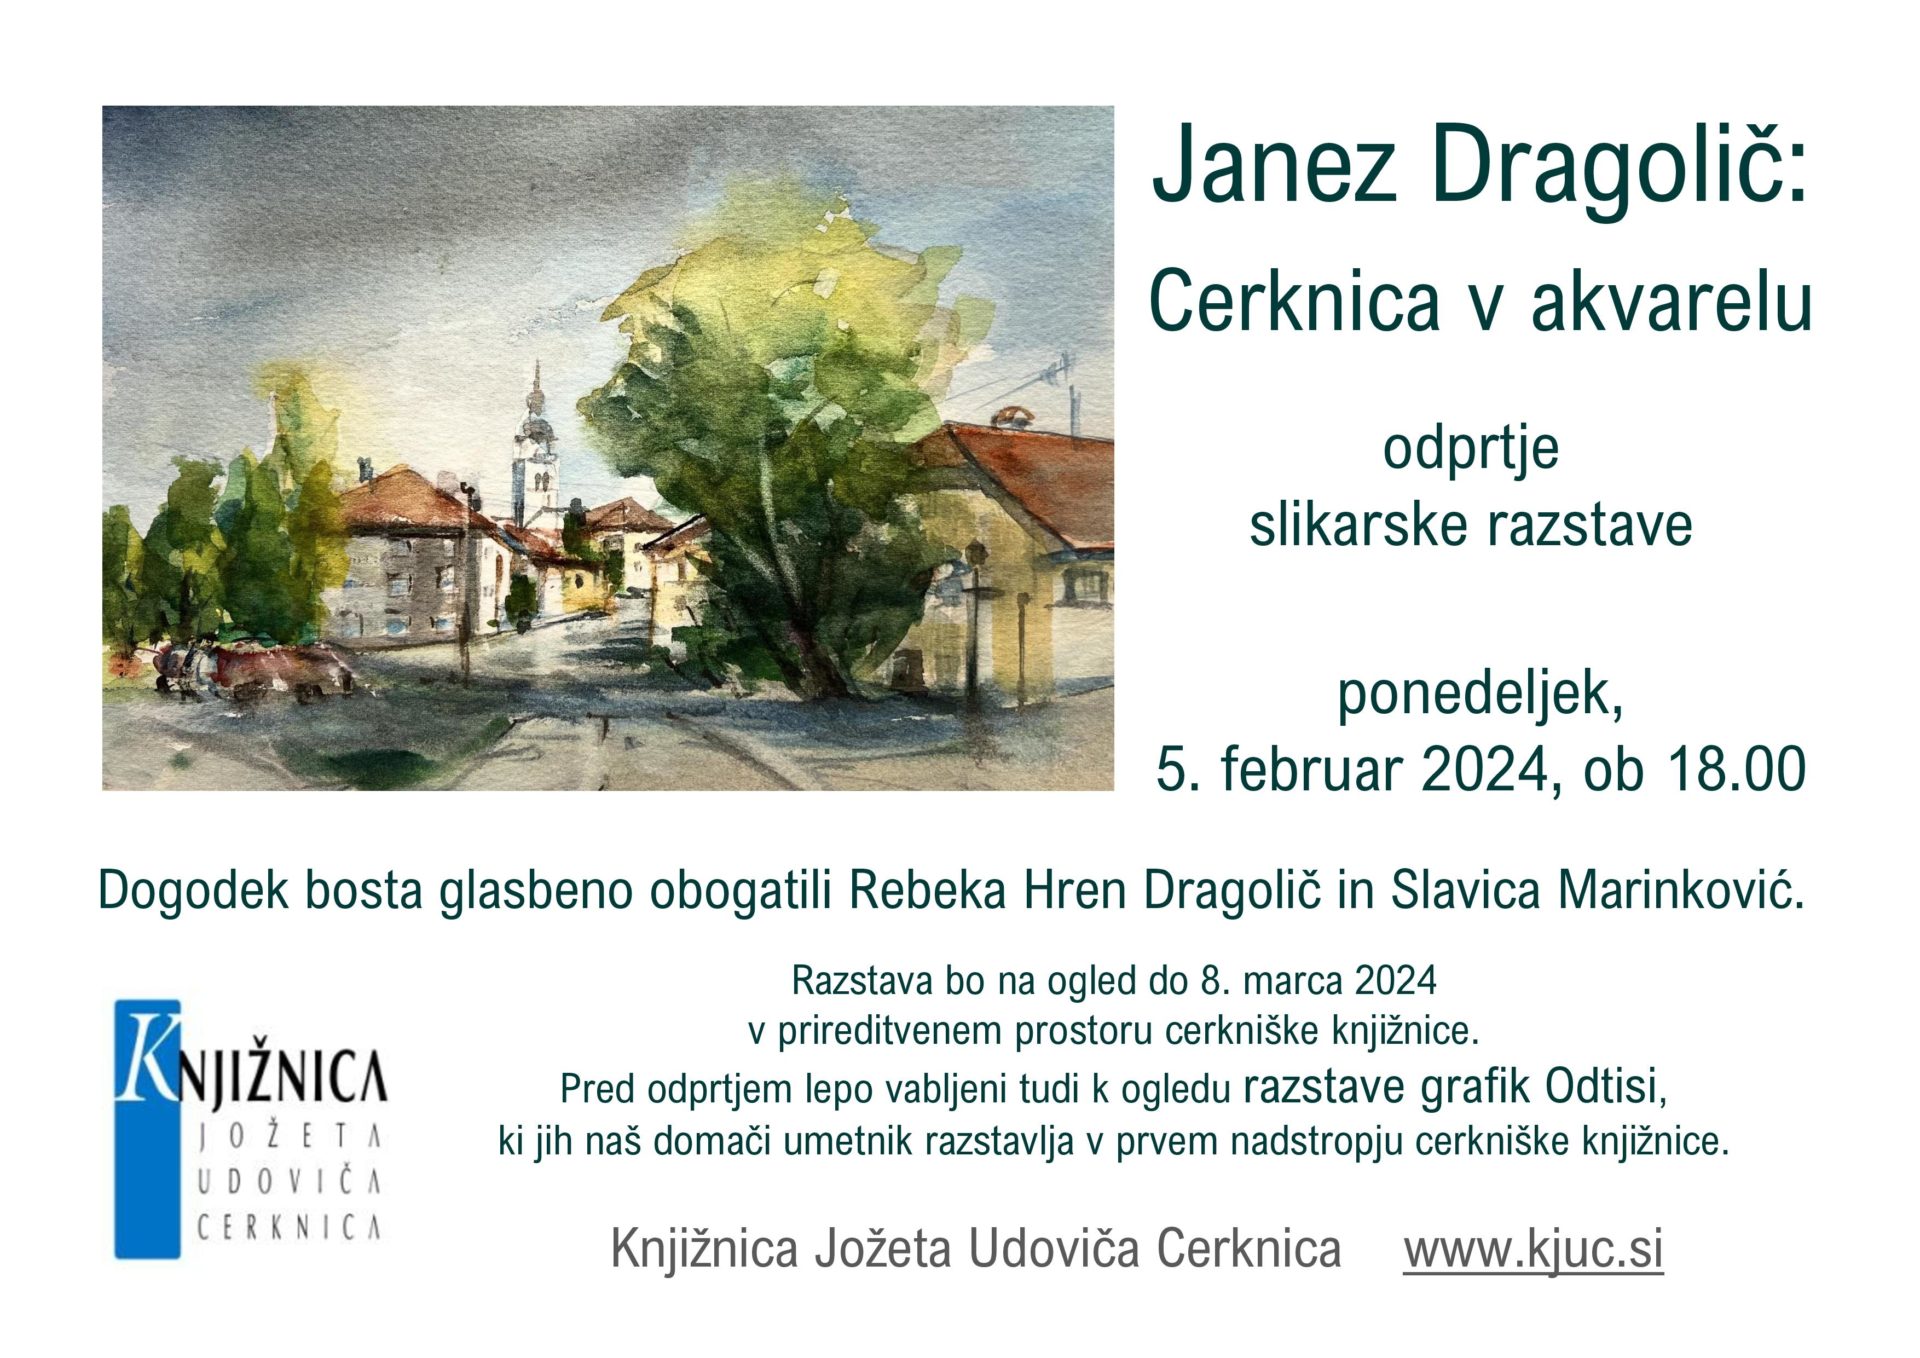 Janez Dragolic vabilo page 001 - Janez Dragolič: Cerknica v akvarelu - odprtje slikarske razstave